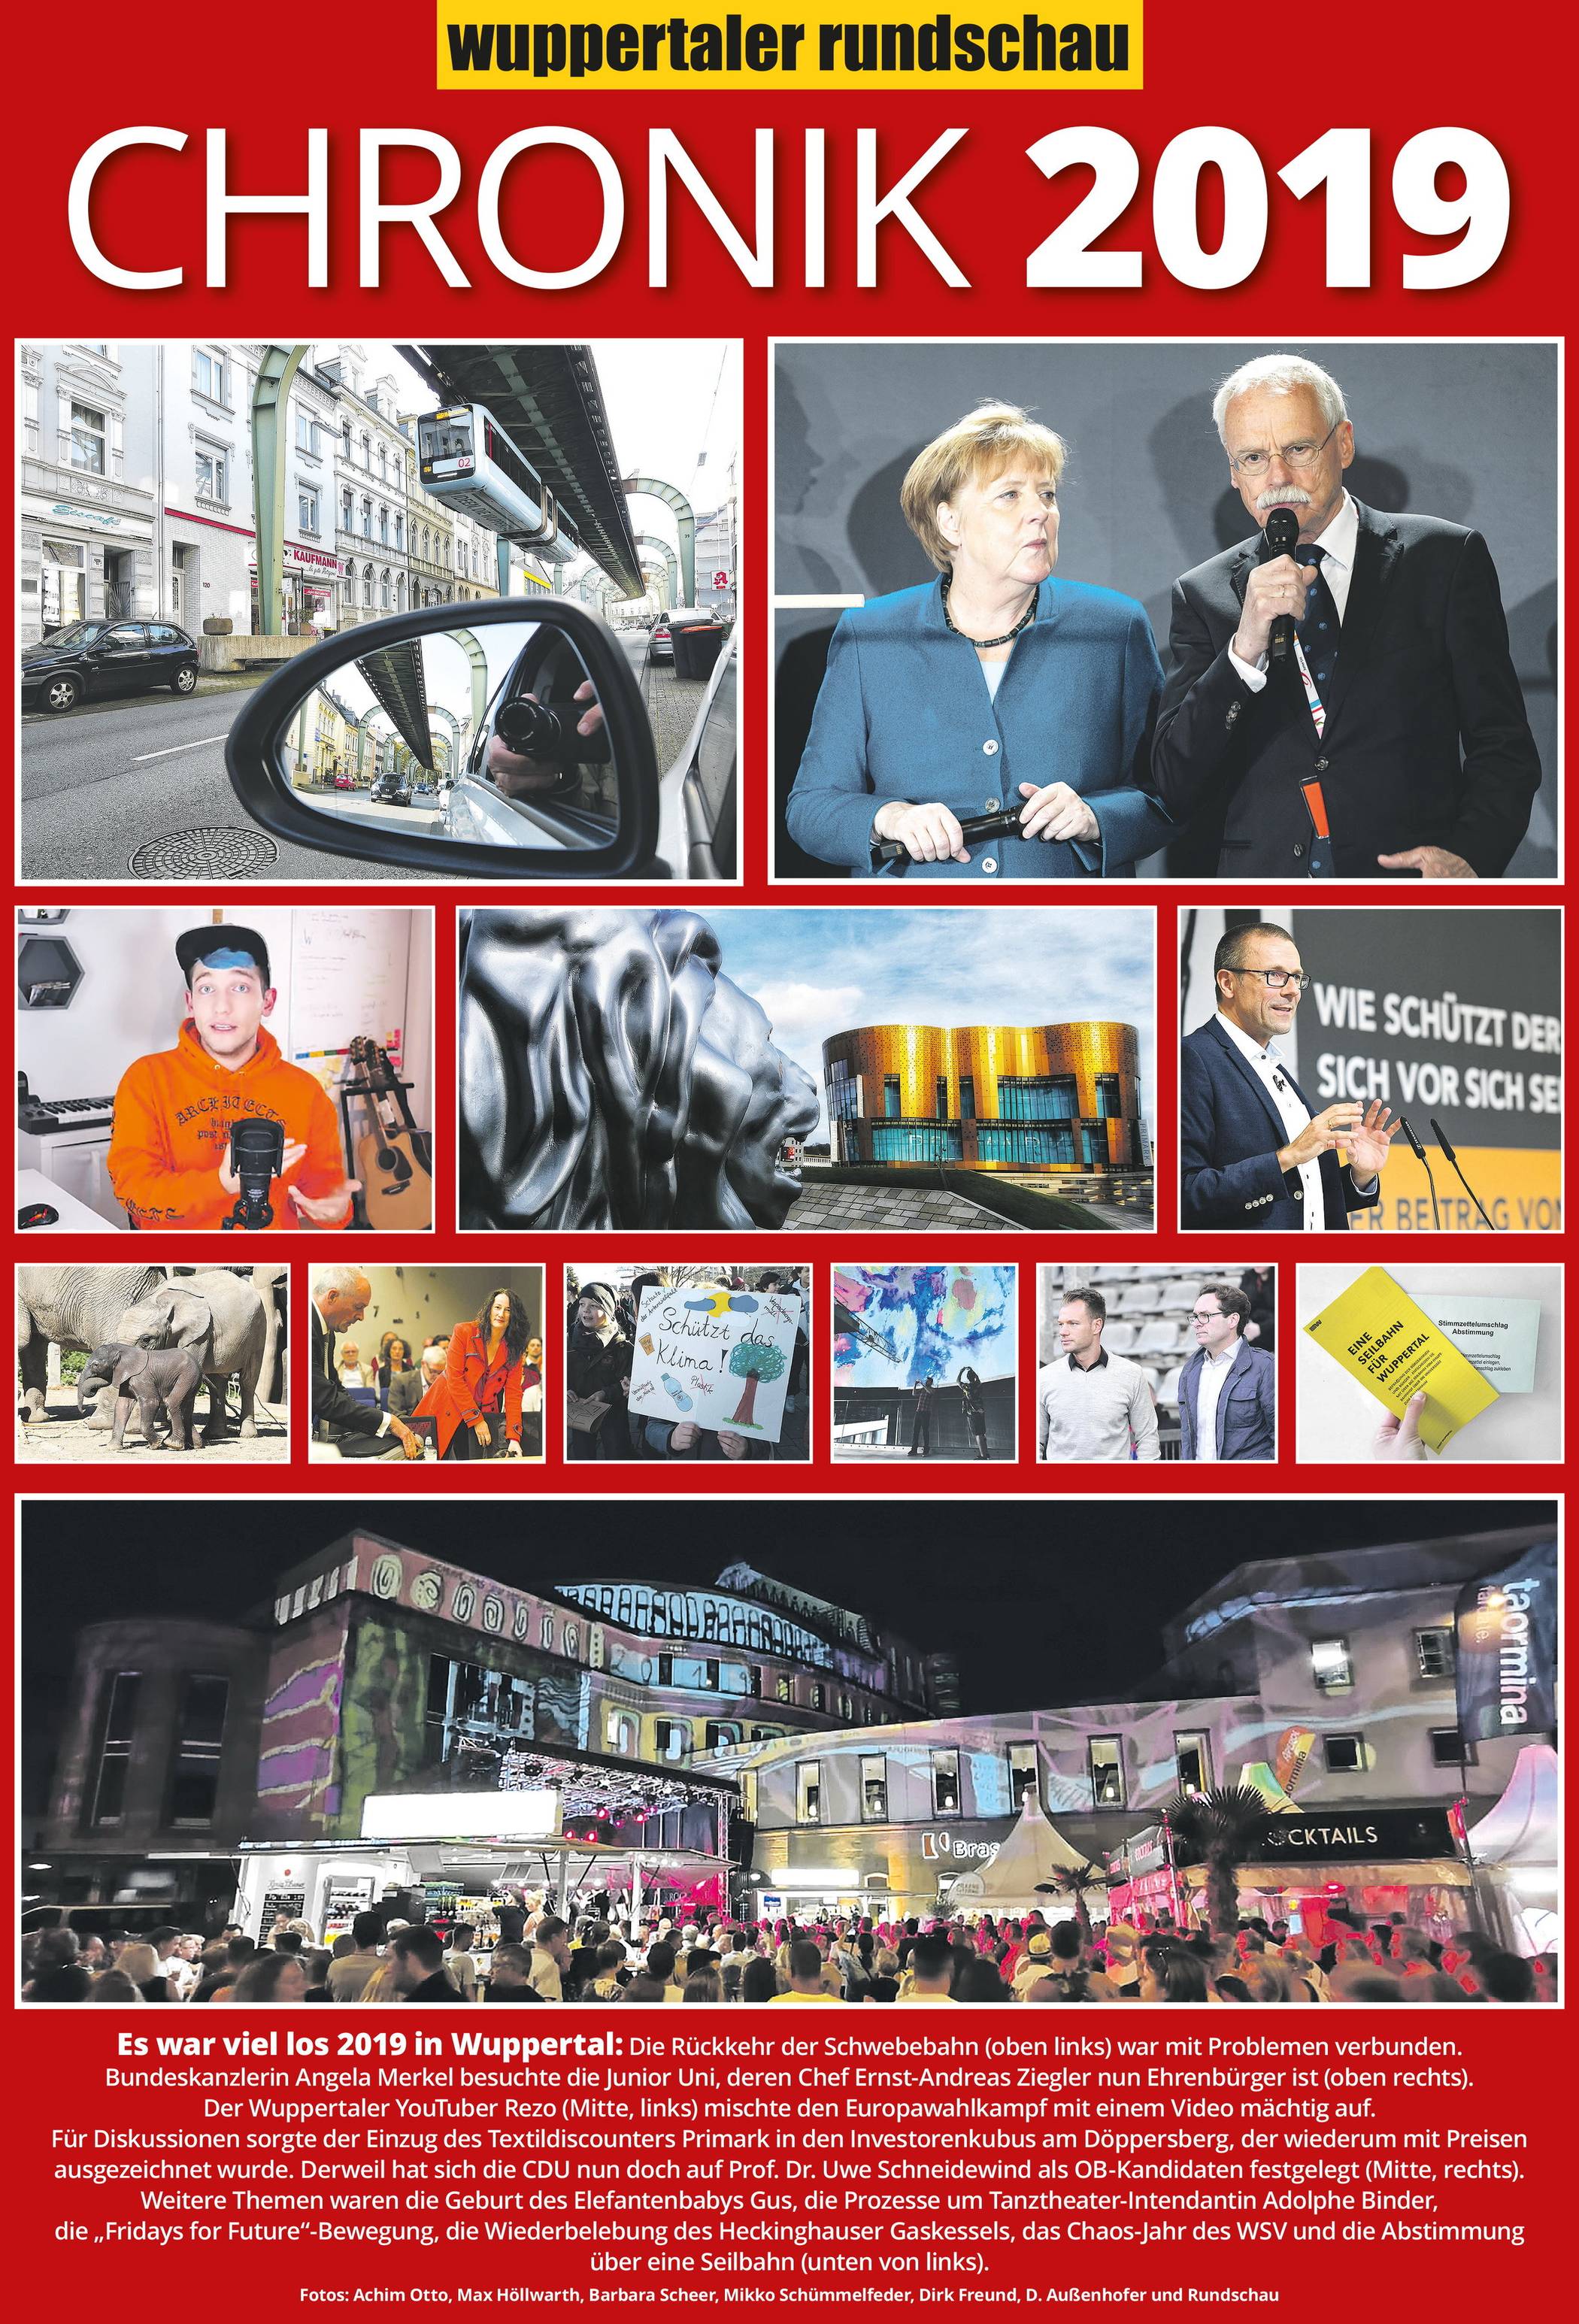 Wuppertals Chronik 2019: X wie x-facher Ärger